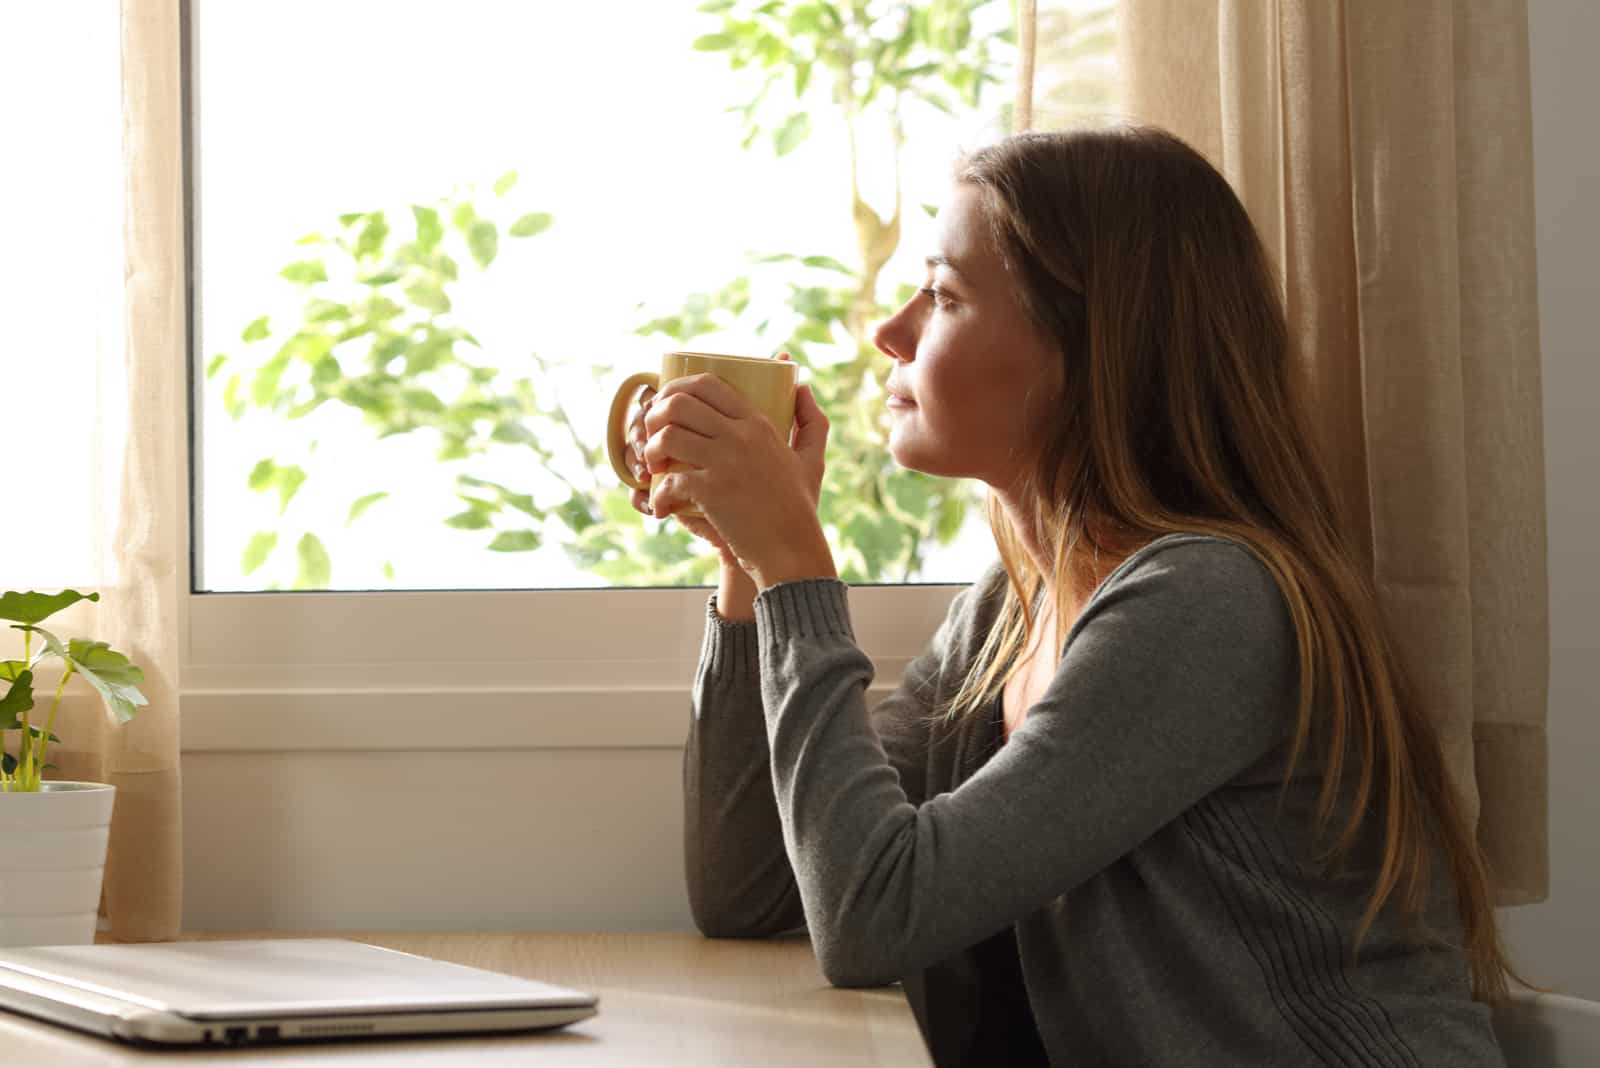 una donna con lunghi capelli castani siede a un tavolo bevendo caffè e guardando fuori dalla finestra